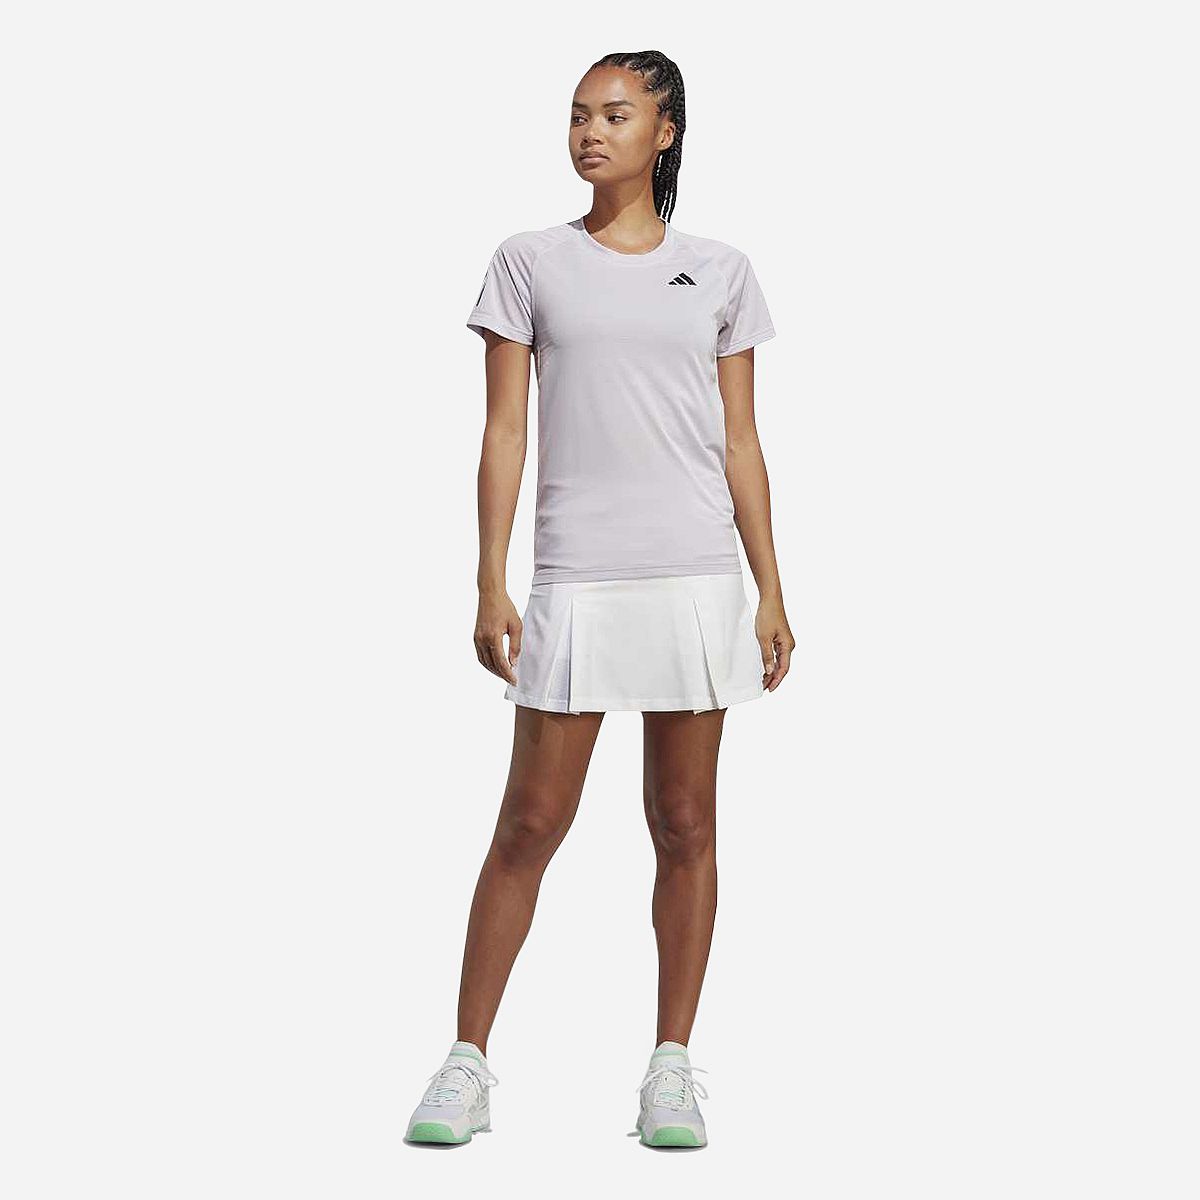 AN298270 Club Tennis T-shirt